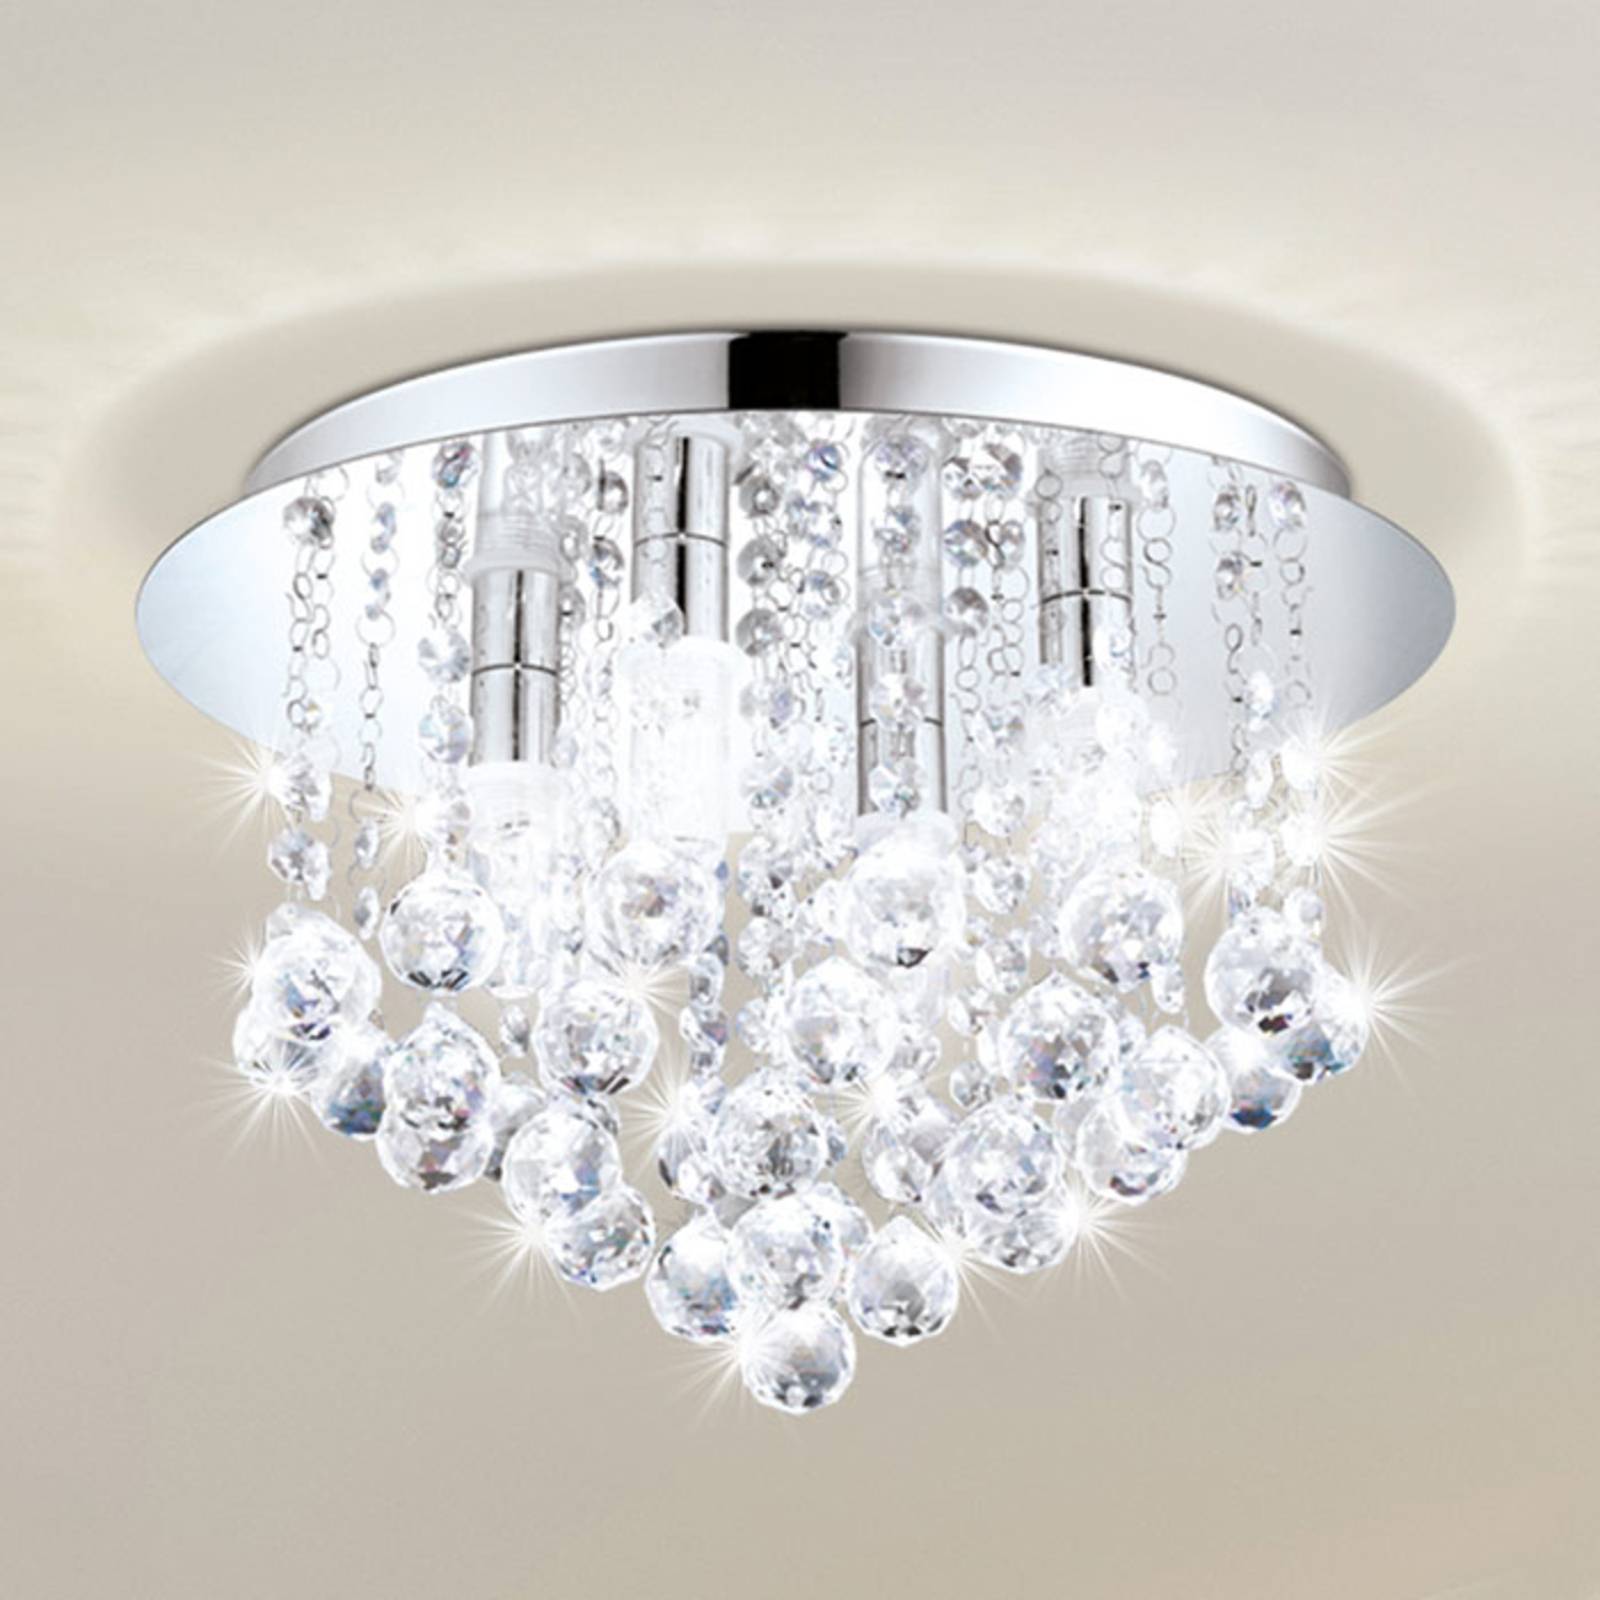 LED plafondlamp Almonte met behang, 50 cm